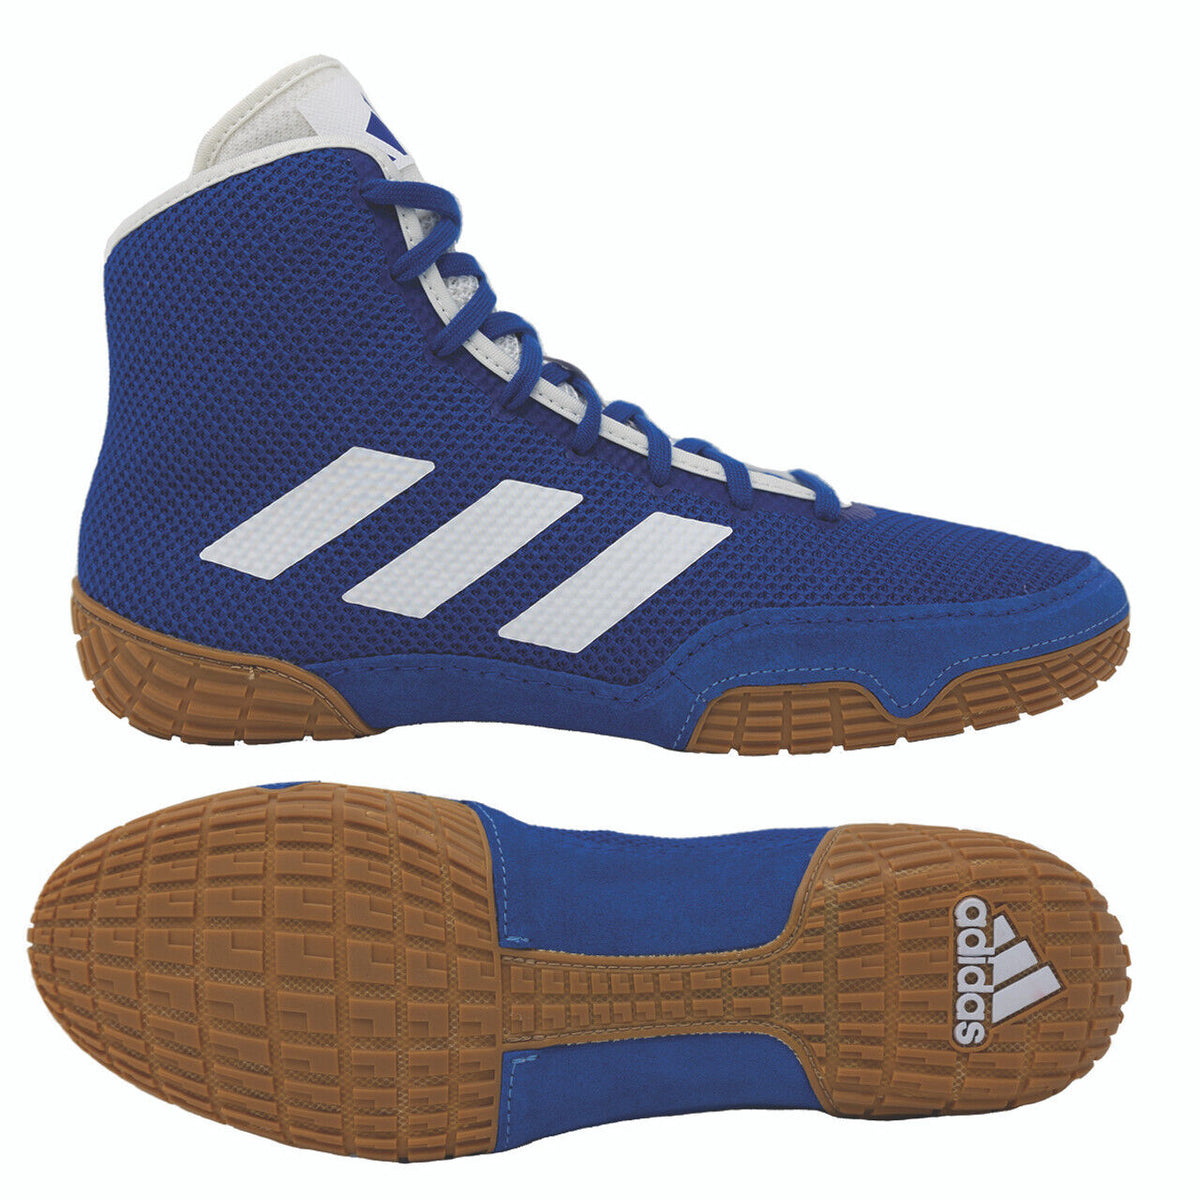 Adidas Tech-Fall brottarskor i färgen blå. Nu till bästa pris hos Phantom Athletics . Adidas brottningsskor är bland de mest eftertraktade skorna bland brottare över hela världen eftersom de erbjuder överlägsen kvalitet i kombination med ultimat komfort. Den robusta sulan ger grepp på brottningsmattan. 